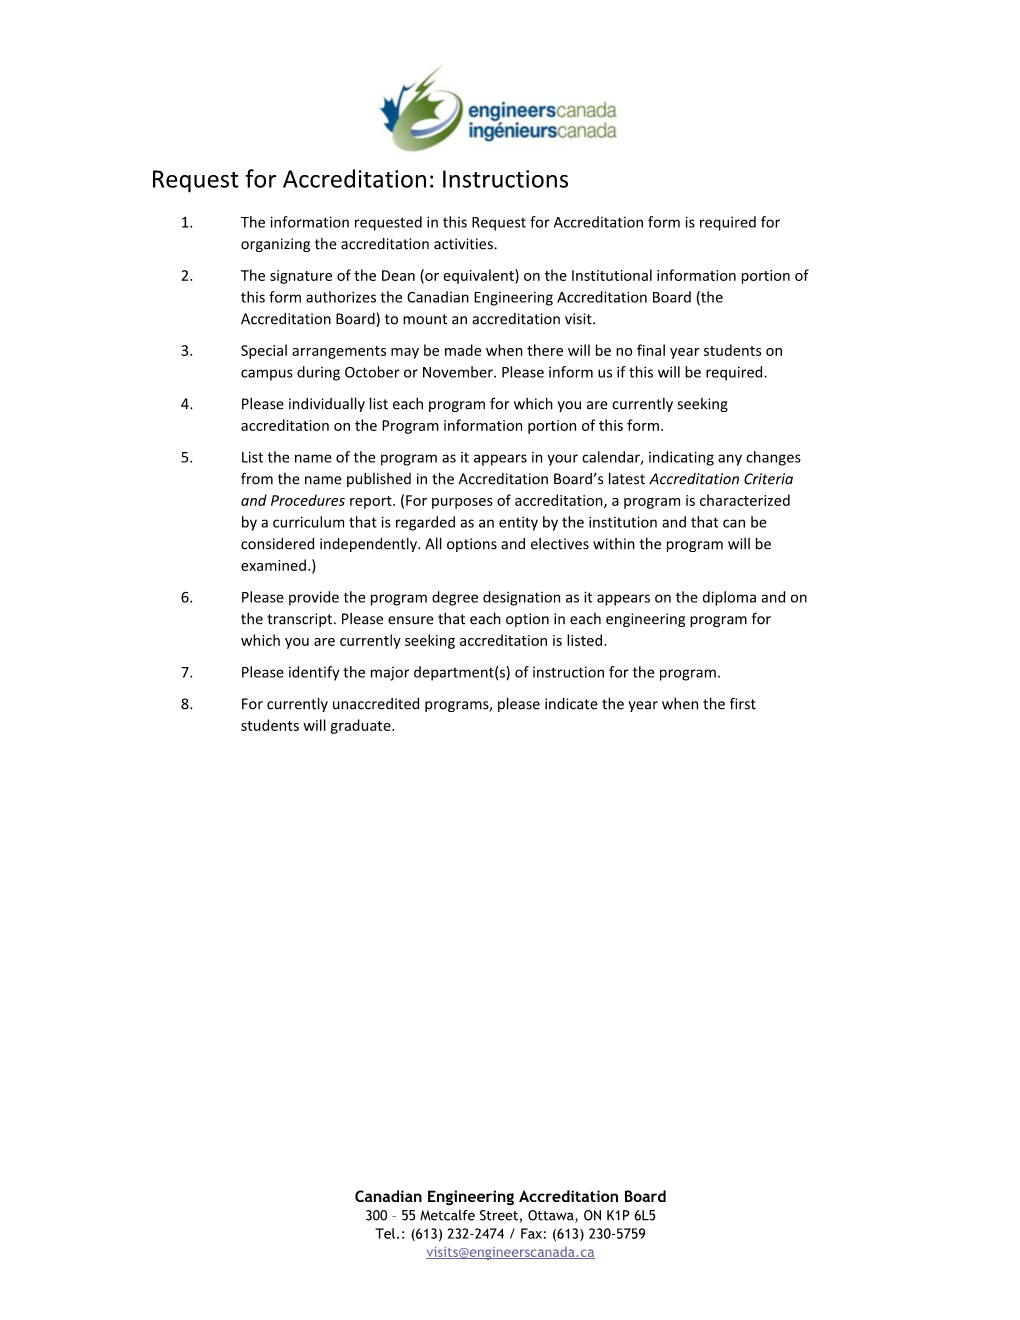 CEAB Accreditation Criteria 2008